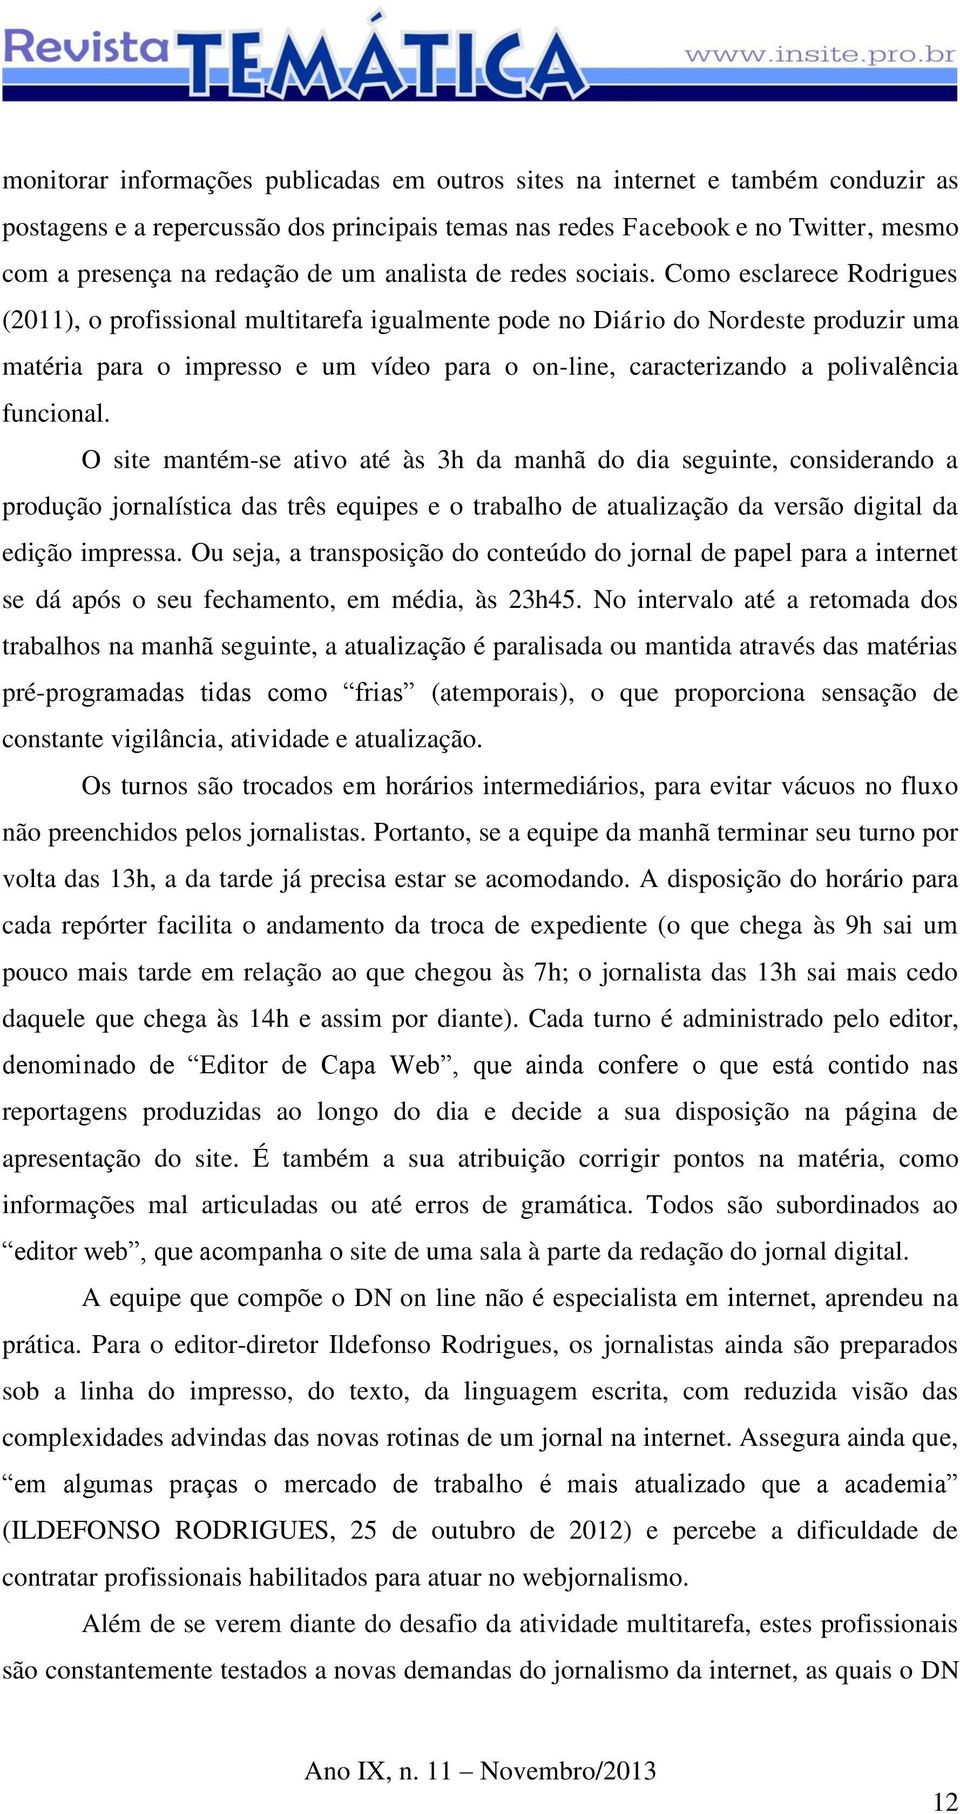 Como esclarece Rodrigues (2011), o profissional multitarefa igualmente pode no Diário do Nordeste produzir uma matéria para o impresso e um vídeo para o on-line, caracterizando a polivalência